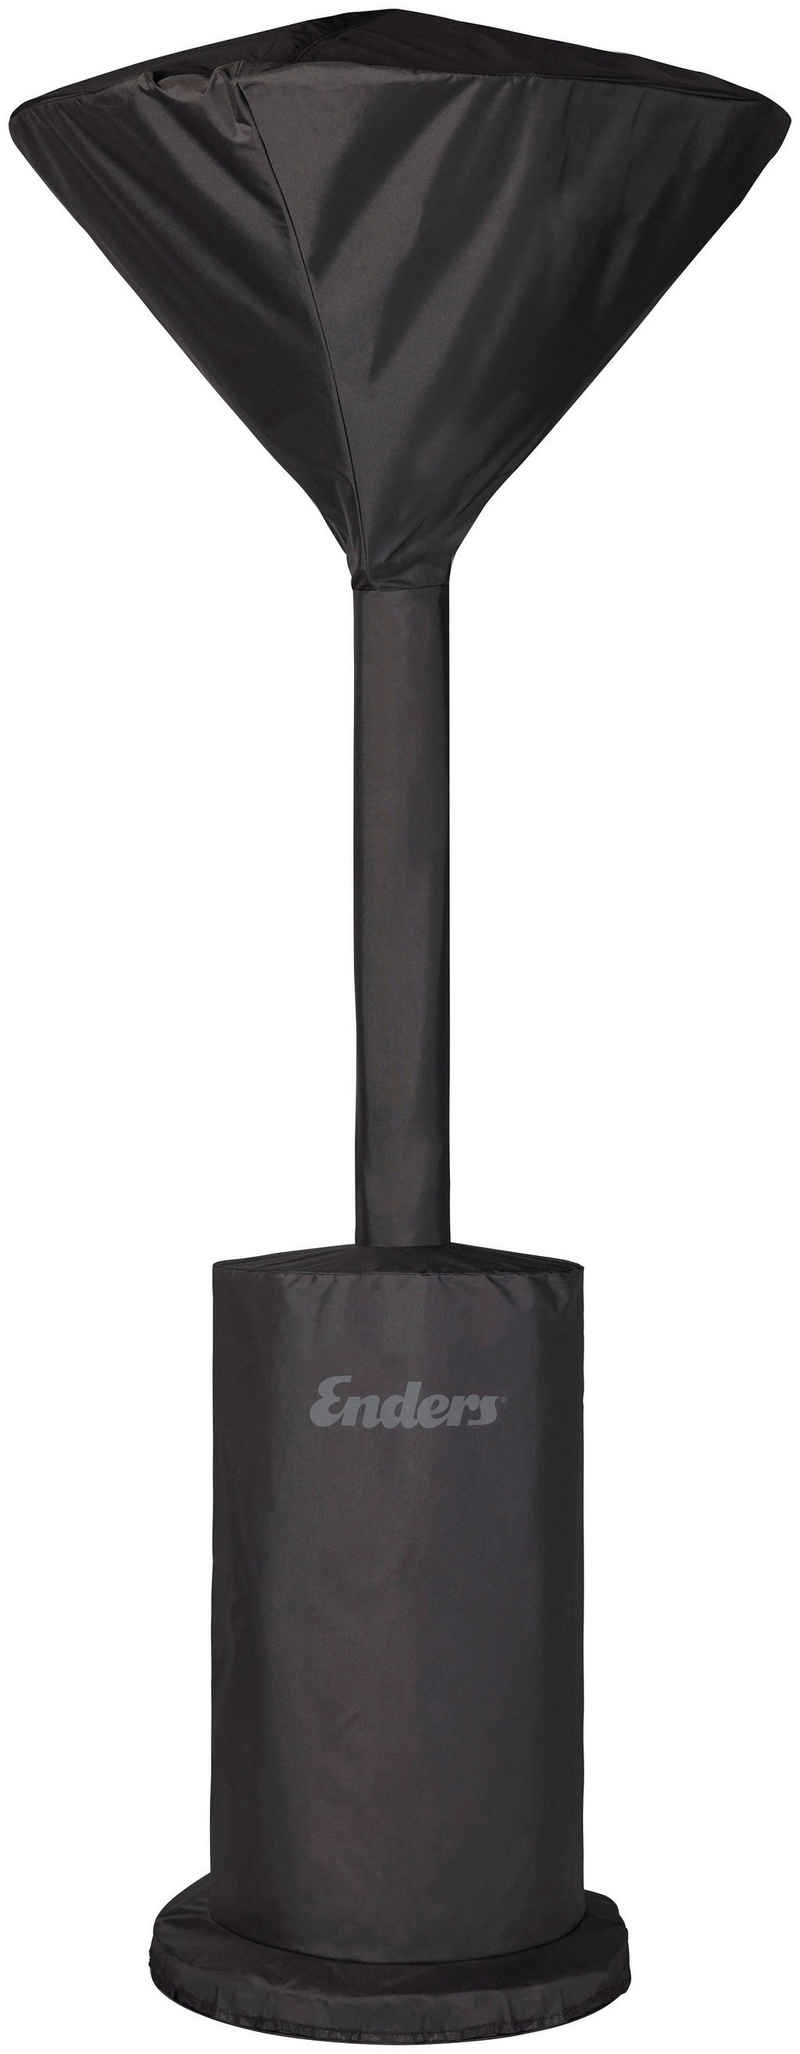 Enders® Heizstrahler-Schutzhülle Premium, für Enders® Terrassenheizer Fancy, Fancy Eco Green und Solid